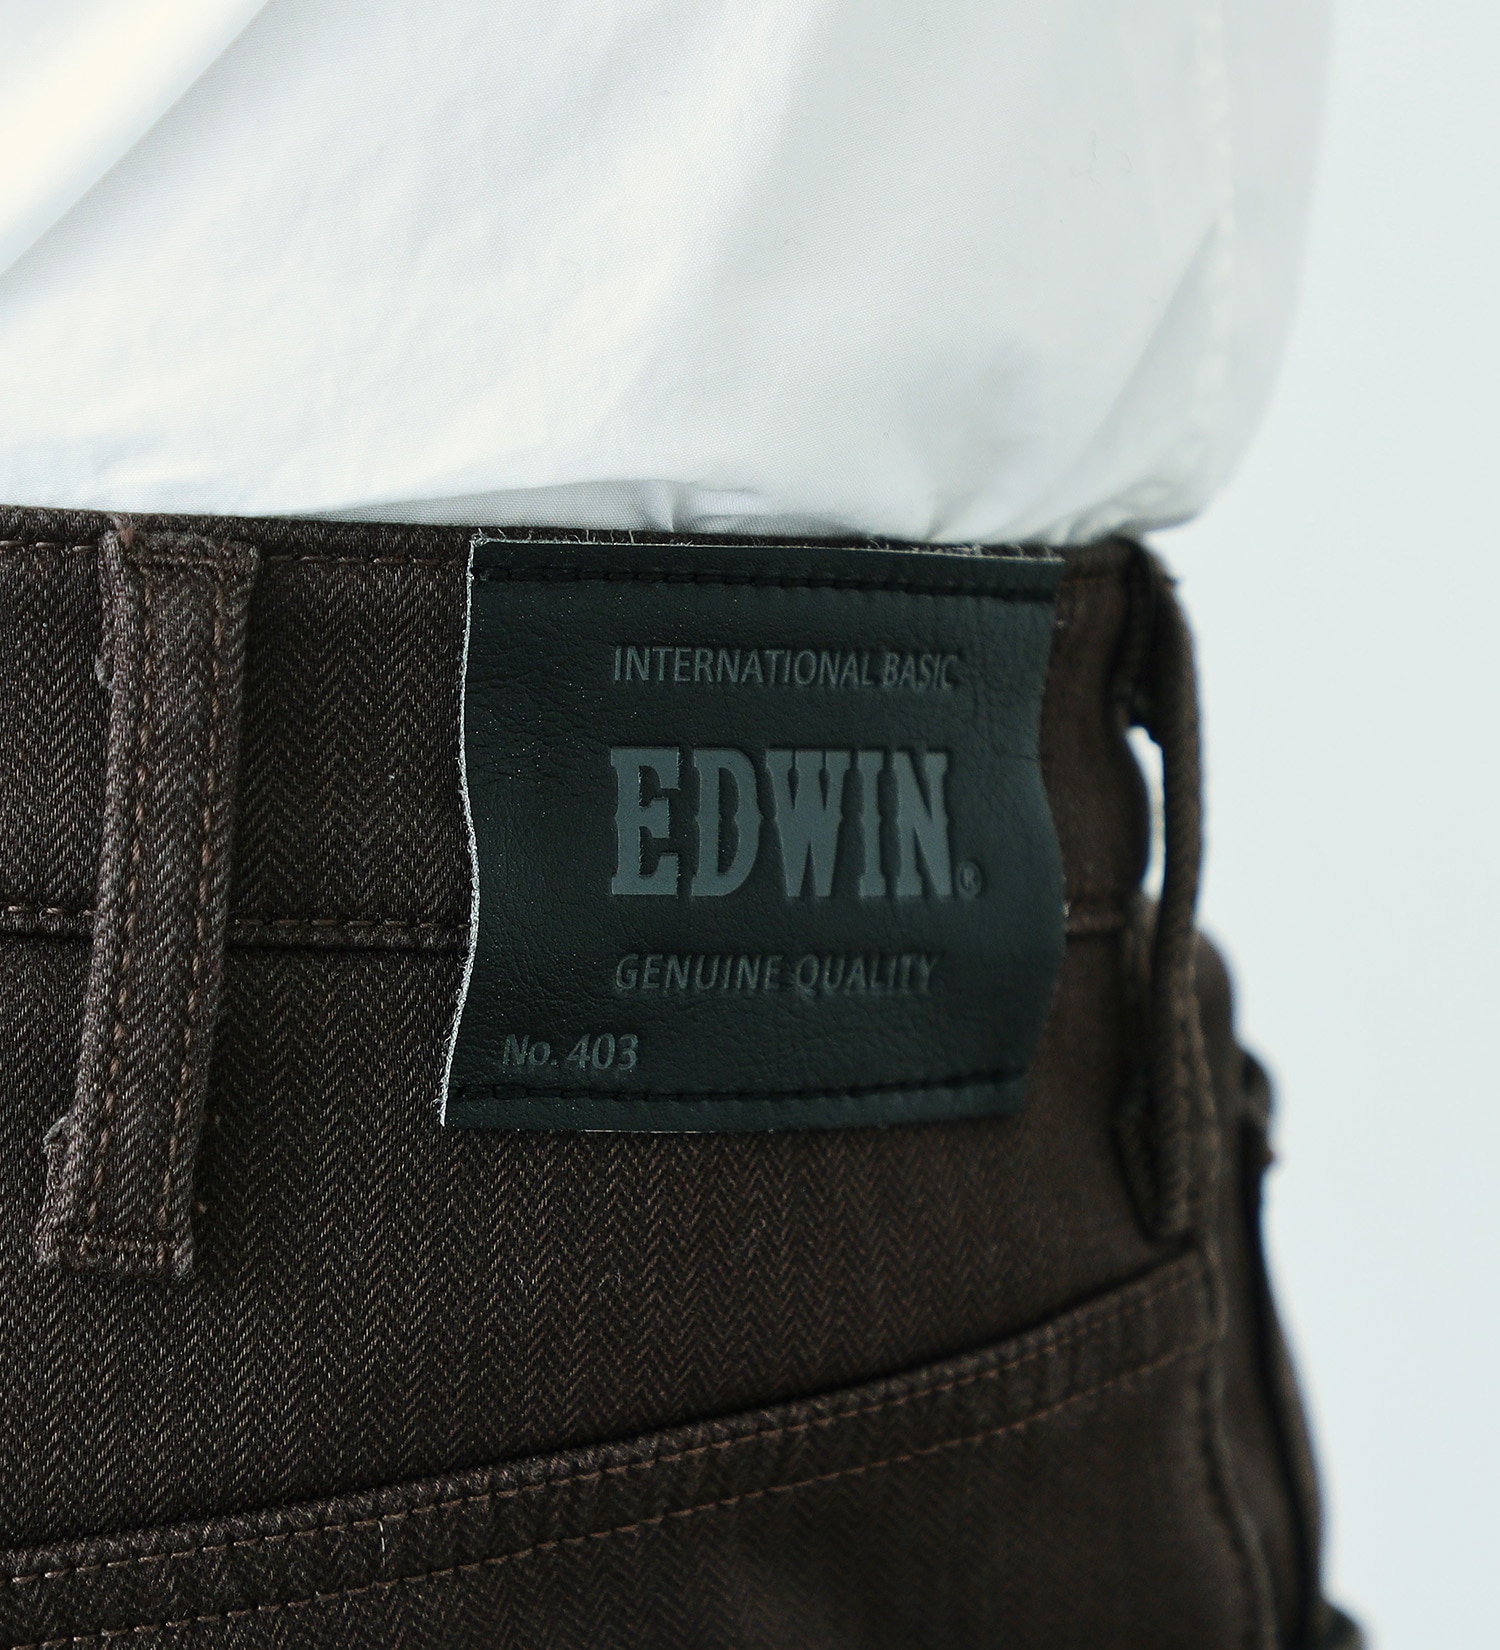 EDWIN(エドウイン)の【先行SALE】【大きいサイズ】2層で暖かい EDWIN インターナショナルベーシック レギュラーストレートパンツ403 WILD FIRE 2層ボンディング構造 【暖】|パンツ/パンツ/メンズ|ブラウン